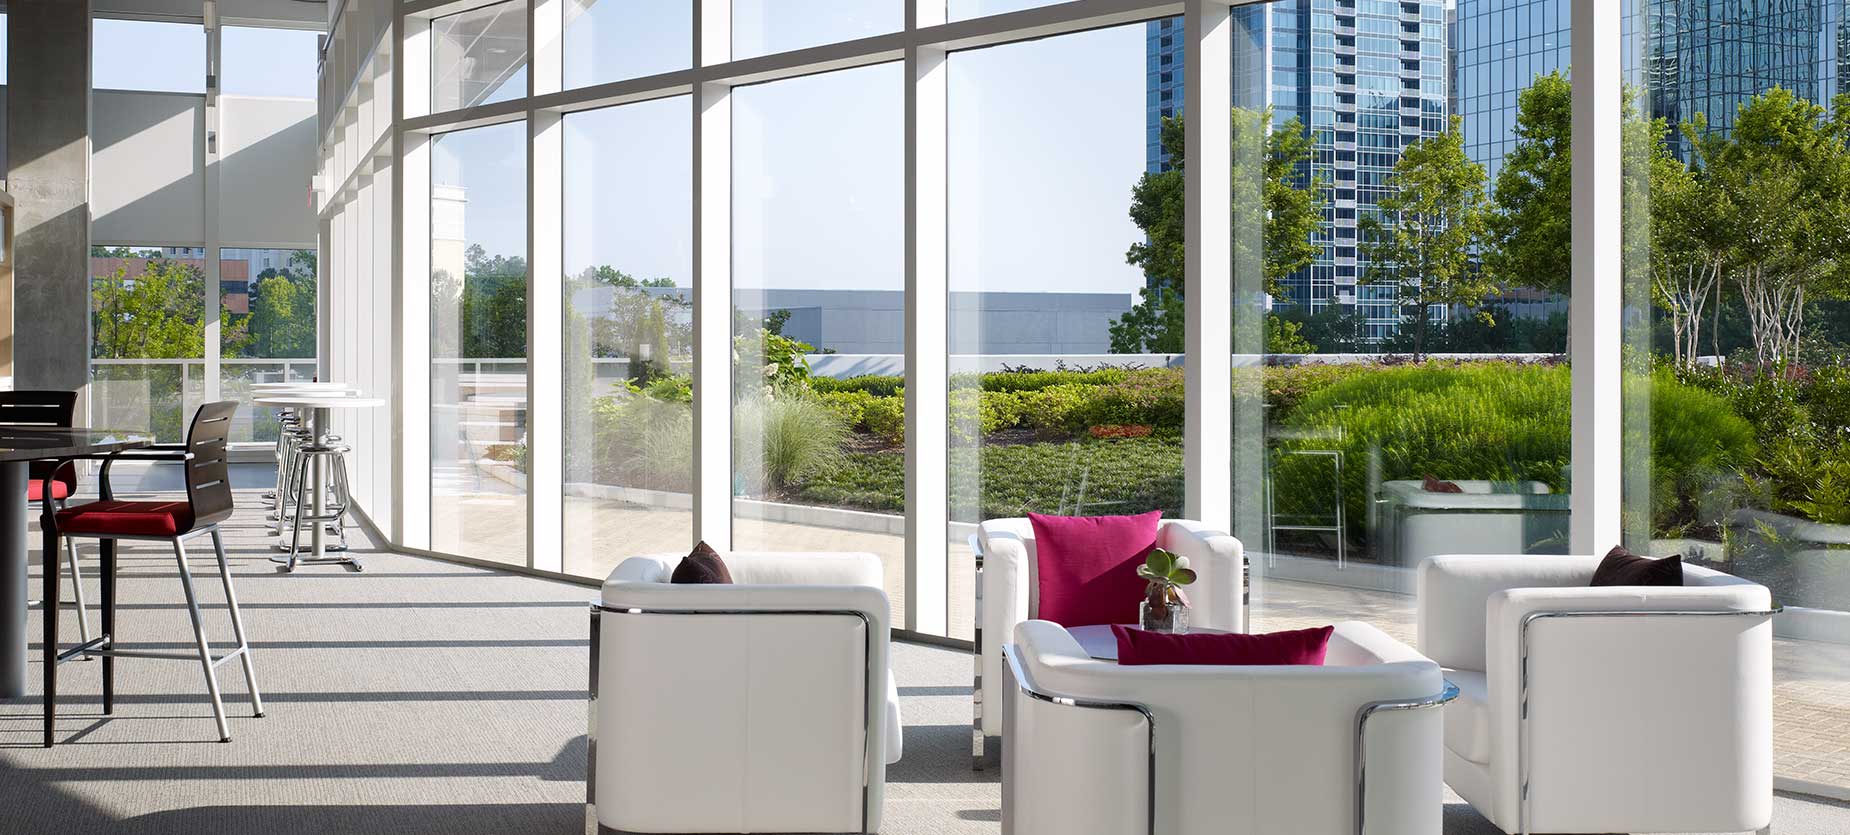 Cet espace de détente dispose de sièges confortables dans différentes dispositions, ce qui favorise l’interaction et la collaboration. La vue sur la ville d’Atlanta et sur les jardins extérieurs contribue également à l’ambiance de l’espace.